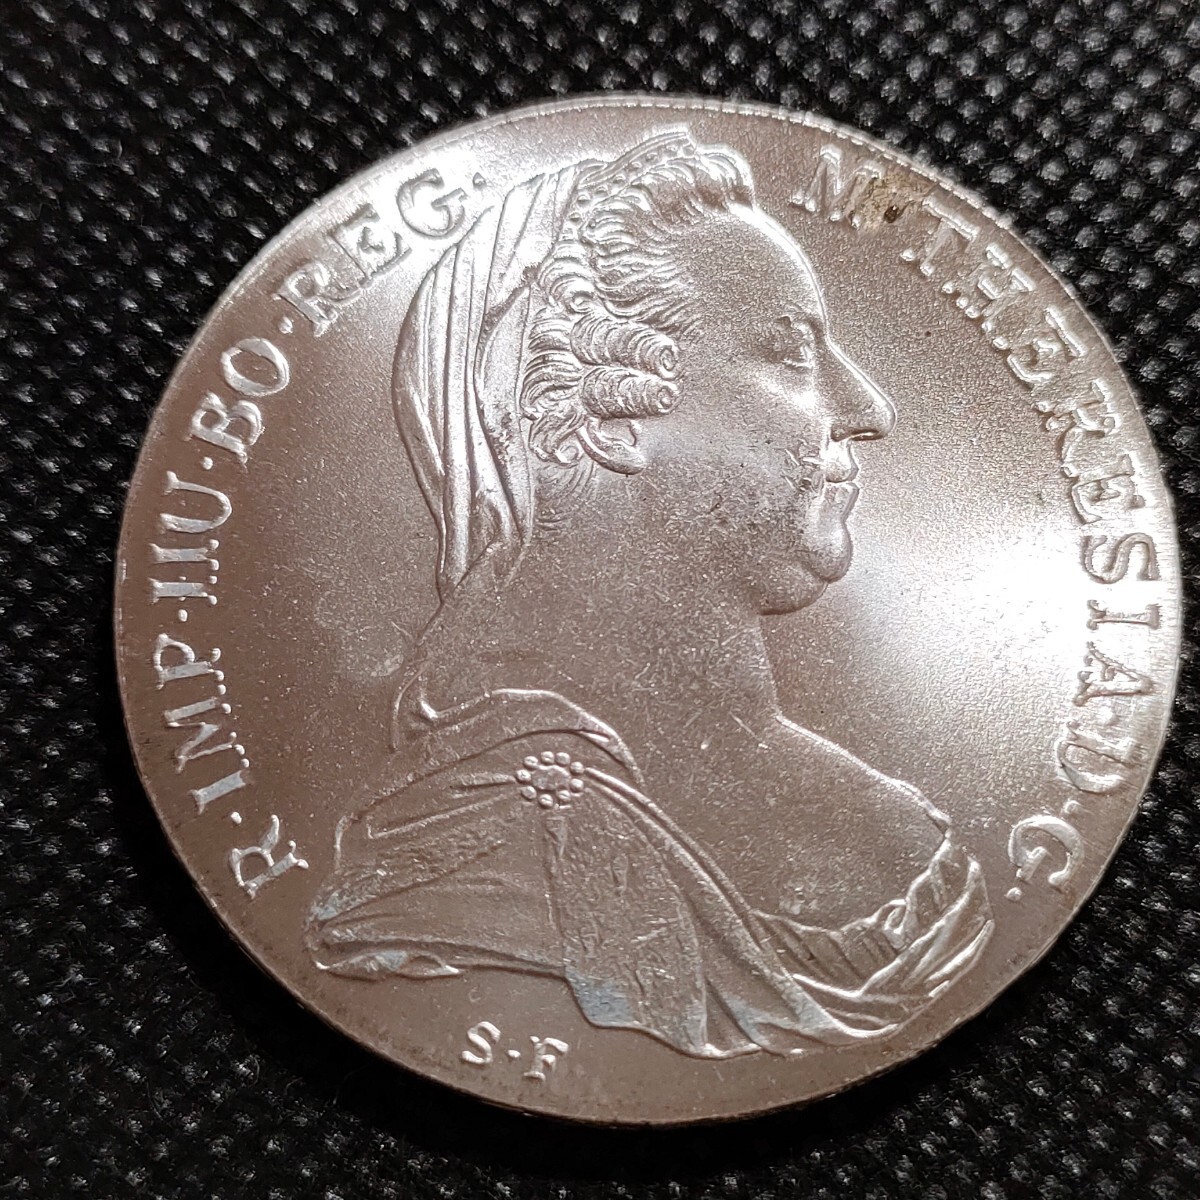 4507 オーストリア マリア・テレジア 約40mm 海外コイン 古銭 アンティーク 貨幣の画像1